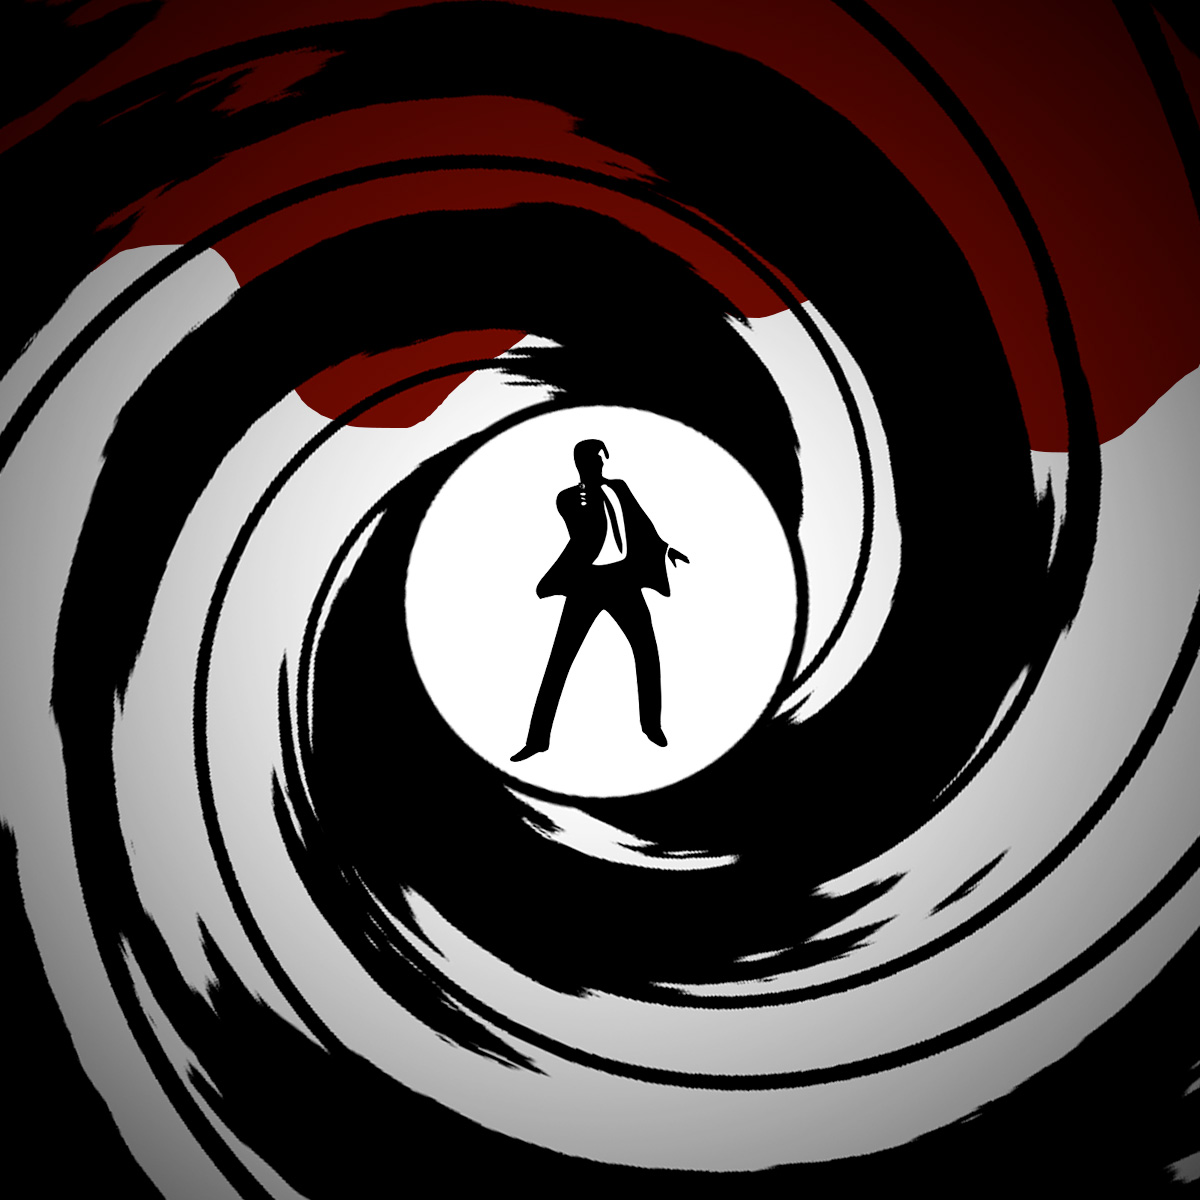 James Bond Gun Barrel Wallpaper Wallpapersafari - vrogue.co